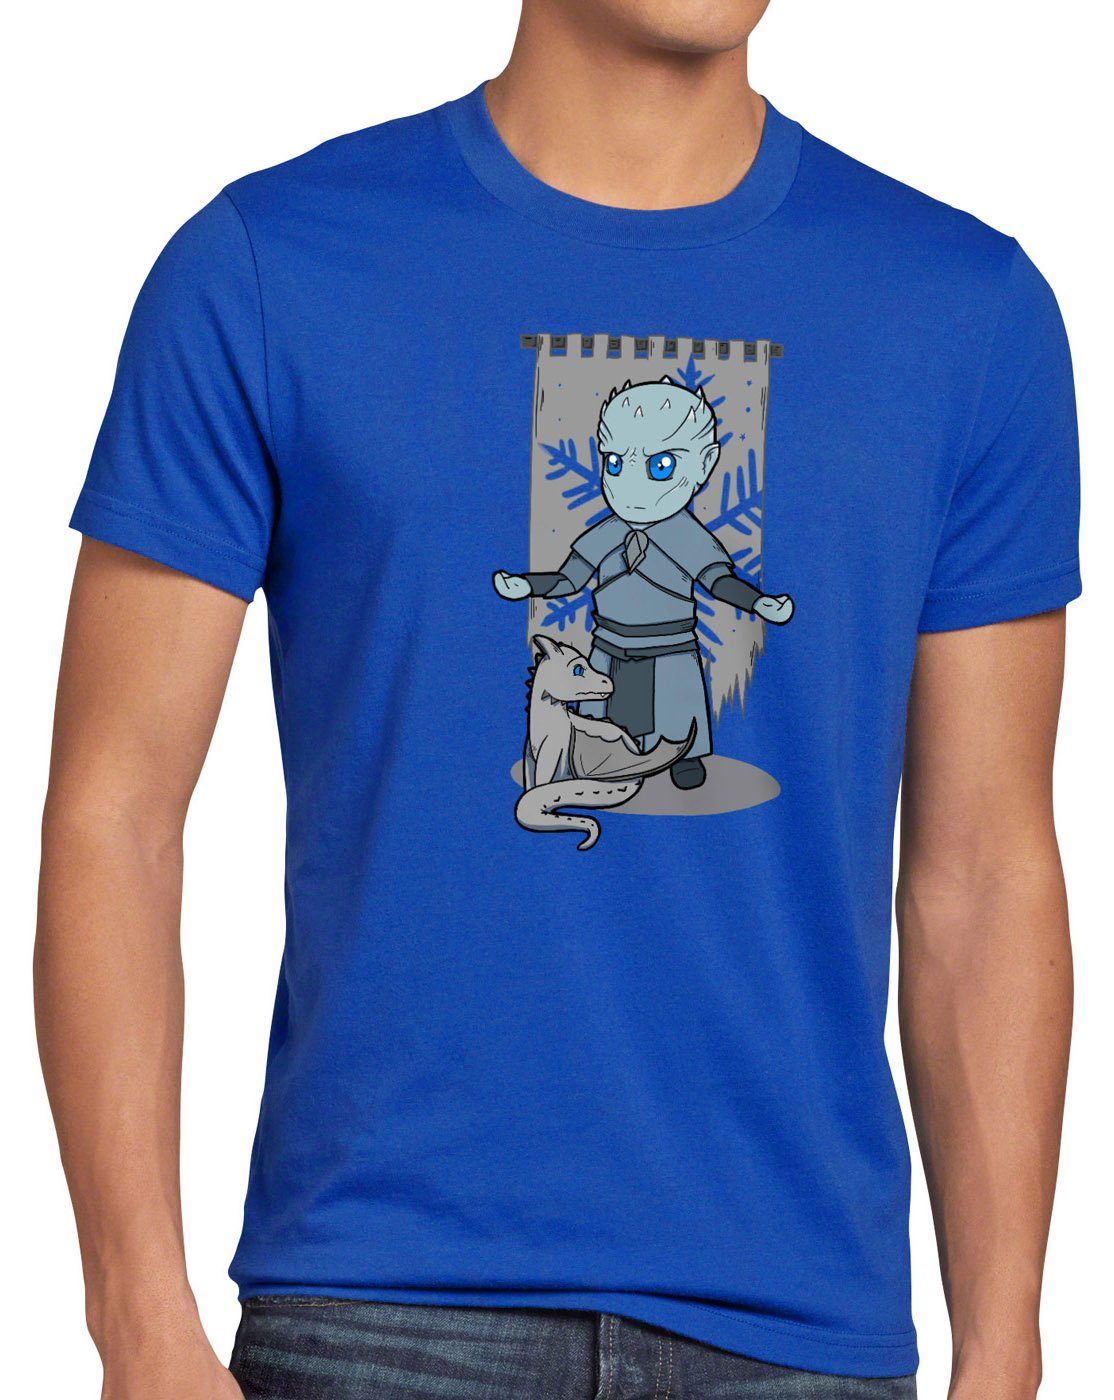 T-Shirt wanderer Print-Shirt Chibi blau Herren weiße Nachtkönig style3